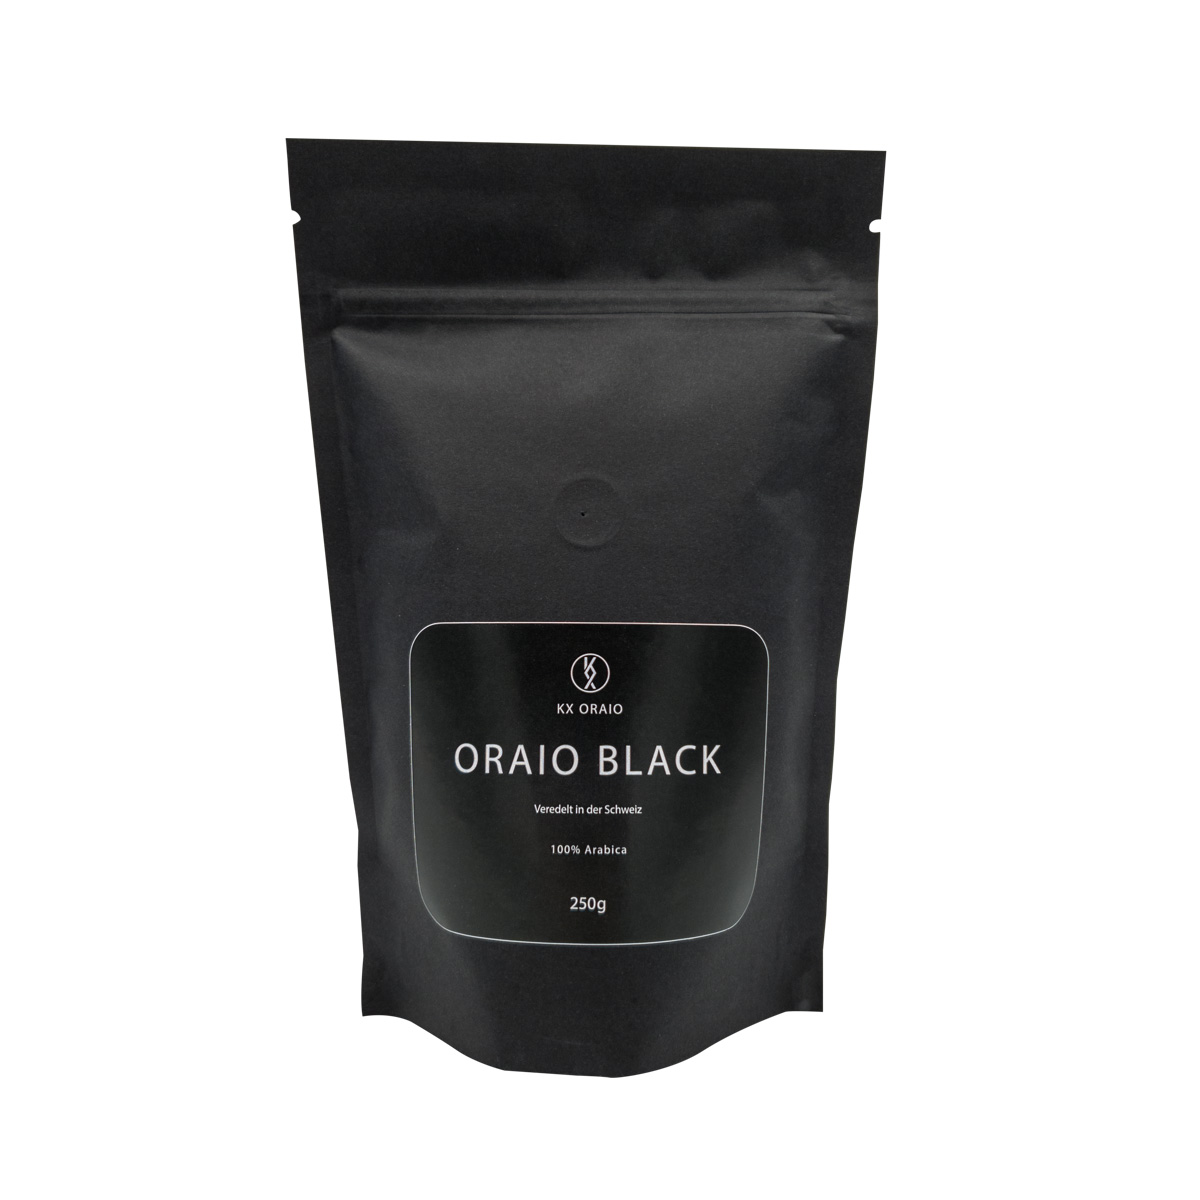 ORAIO BLACK